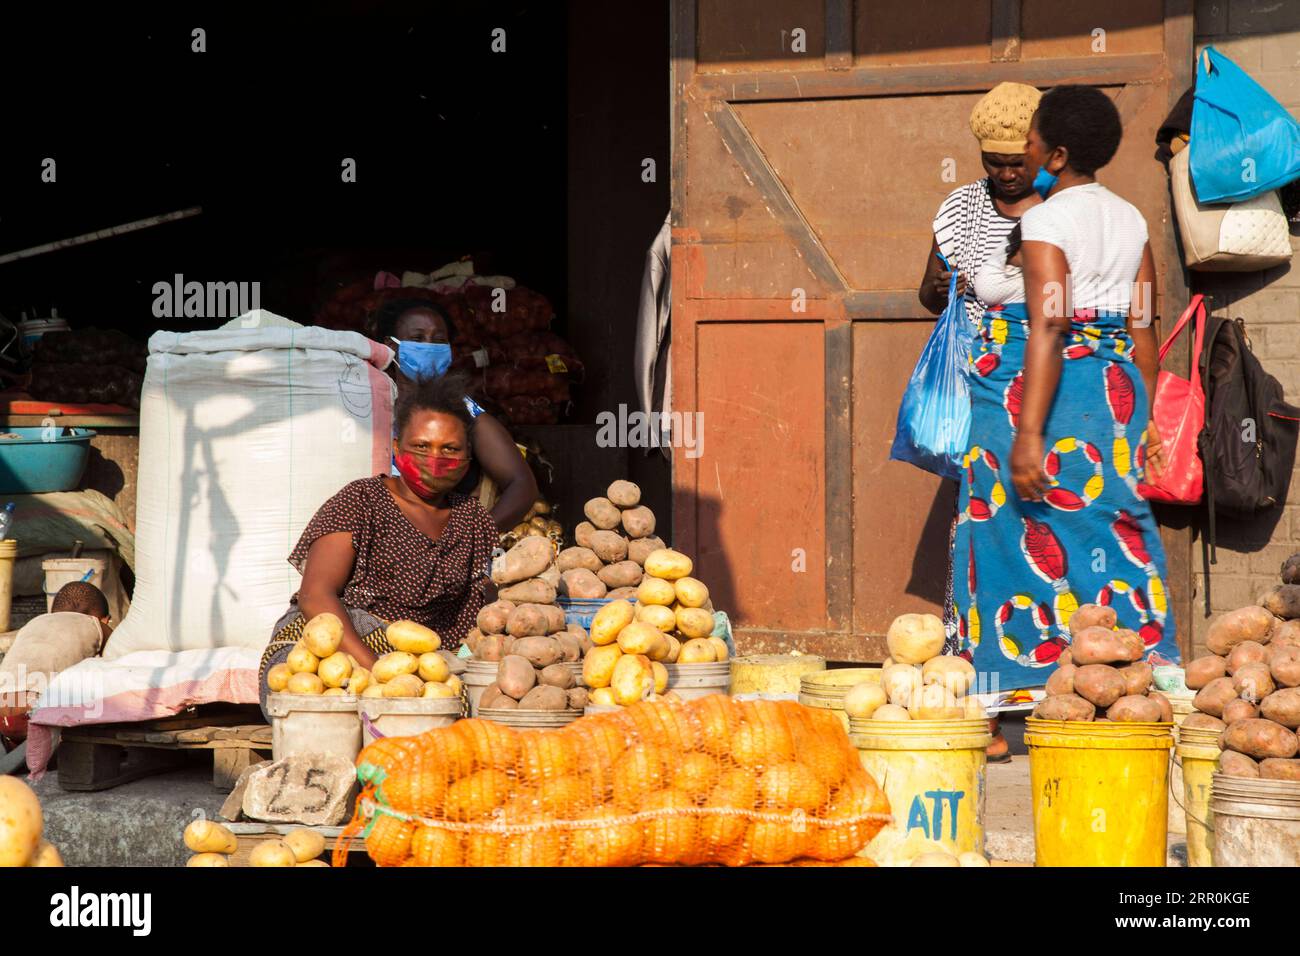 200818 -- LUSAKA, 18. August 2020 -- Händler, die Gesichtsmasken tragen, verkaufen Gemüse auf einem Markt in Lusaka, der Hauptstadt Sambias, am 18. August 2020. Die bestätigten COVID-19-Fälle Sambias sind weiter gestiegen, wobei die Gesamtzahl der Fälle nahe der Marke von 10.000 liegt. Nach den neuesten Zahlen, die vom gesundheitsministerium am Dienstag veröffentlicht wurden, hat das Land 9.981 bestätigte Fälle nach 142 neuen Fällen gemeldet, die in den letzten 24 Stunden von 794 durchgeführten Tests aufgezeichnet wurden. Foto von /Xinhua ZAMBIA-LUSAKA-COVID-19-CASES MartinxMbangweta PUBLICATIONxNOTxINxCHN Stockfoto